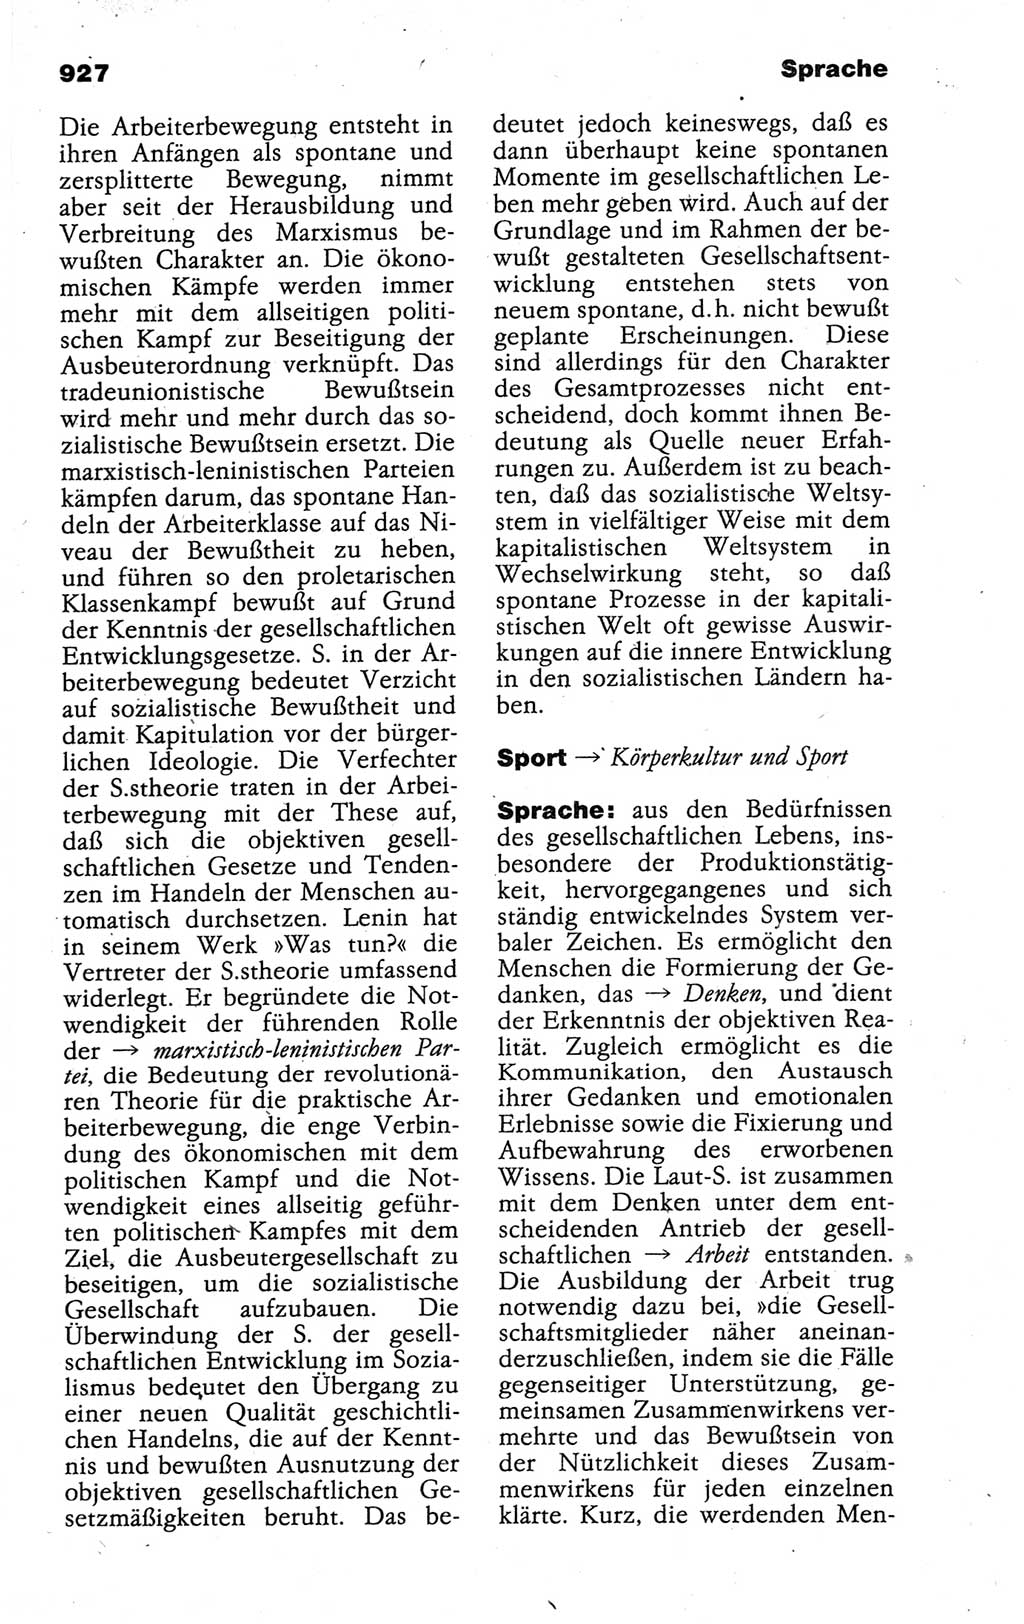 Kleines politisches Wörterbuch [Deutsche Demokratische Republik (DDR)] 1988, Seite 927 (Kl. pol. Wb. DDR 1988, S. 927)